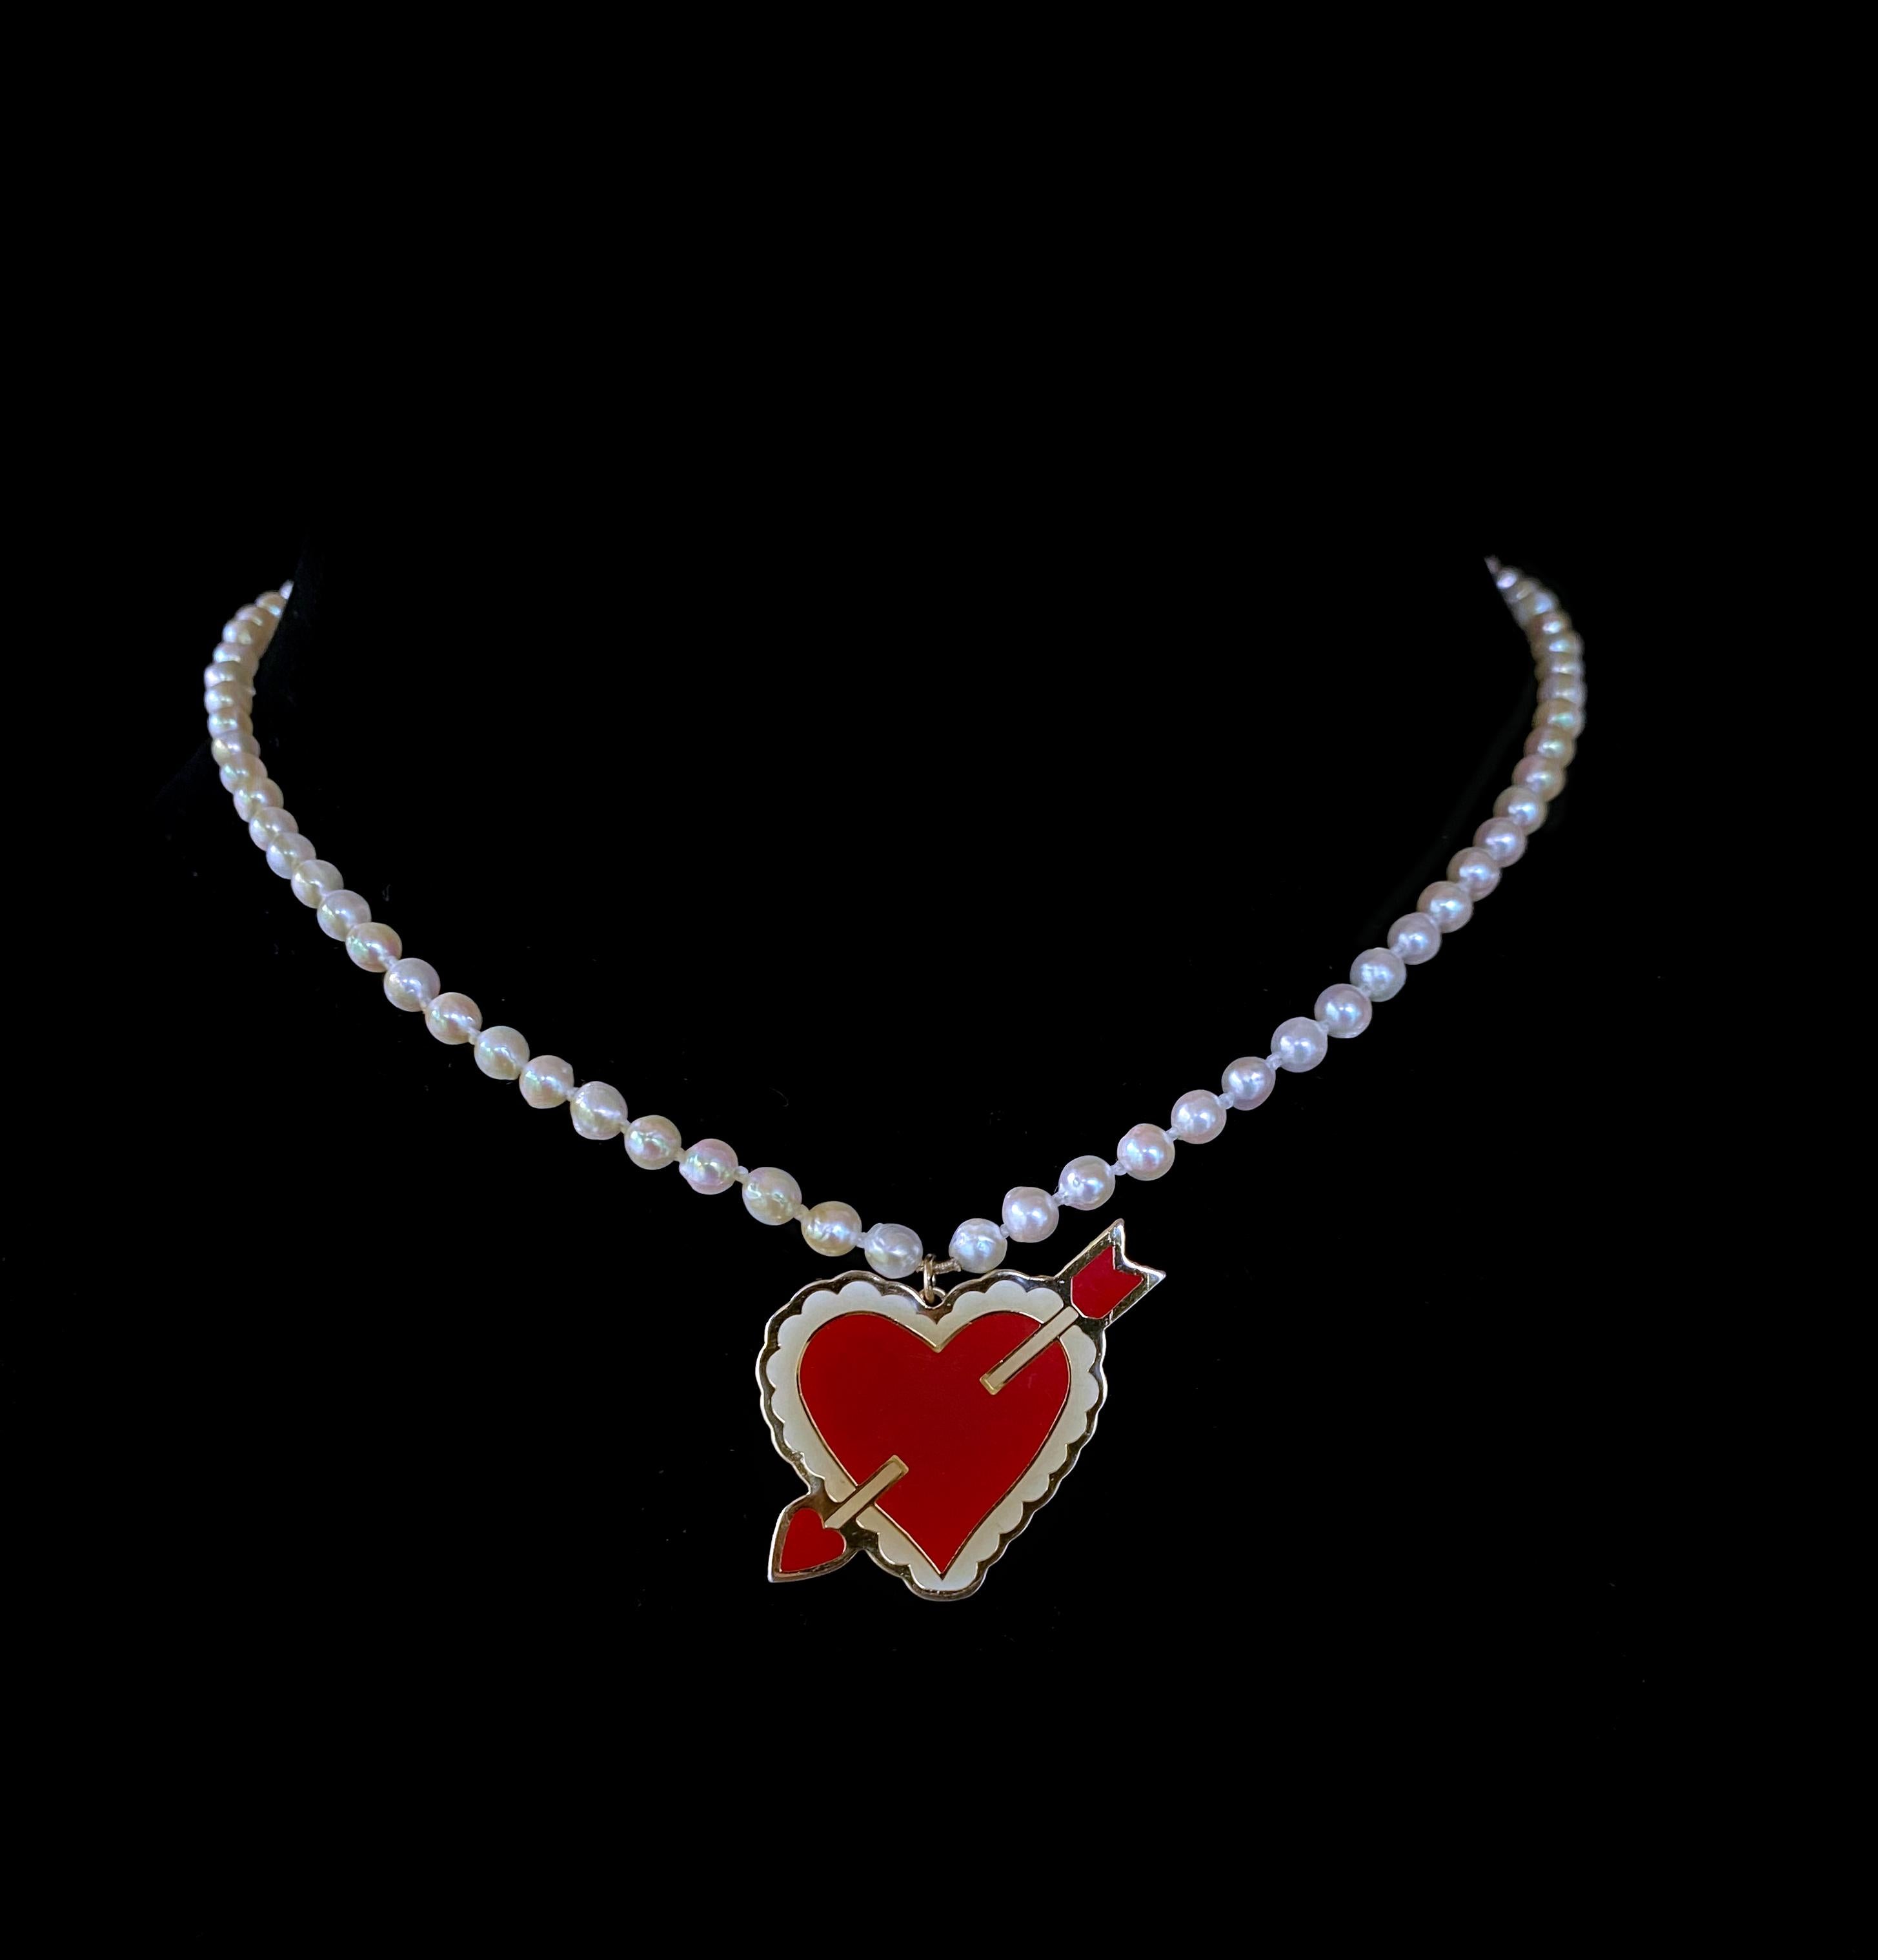 Schlichte und verspielte Halskette von Marina J. Diese Halskette zeigt einen hochglänzenden Vintage-Valentins-Emaille-Anhänger mit einem dekorativen Herz, das von einer Schleife durchzogen ist. Dieser Anhänger wurde in eine kleine Zuchtperlenkette